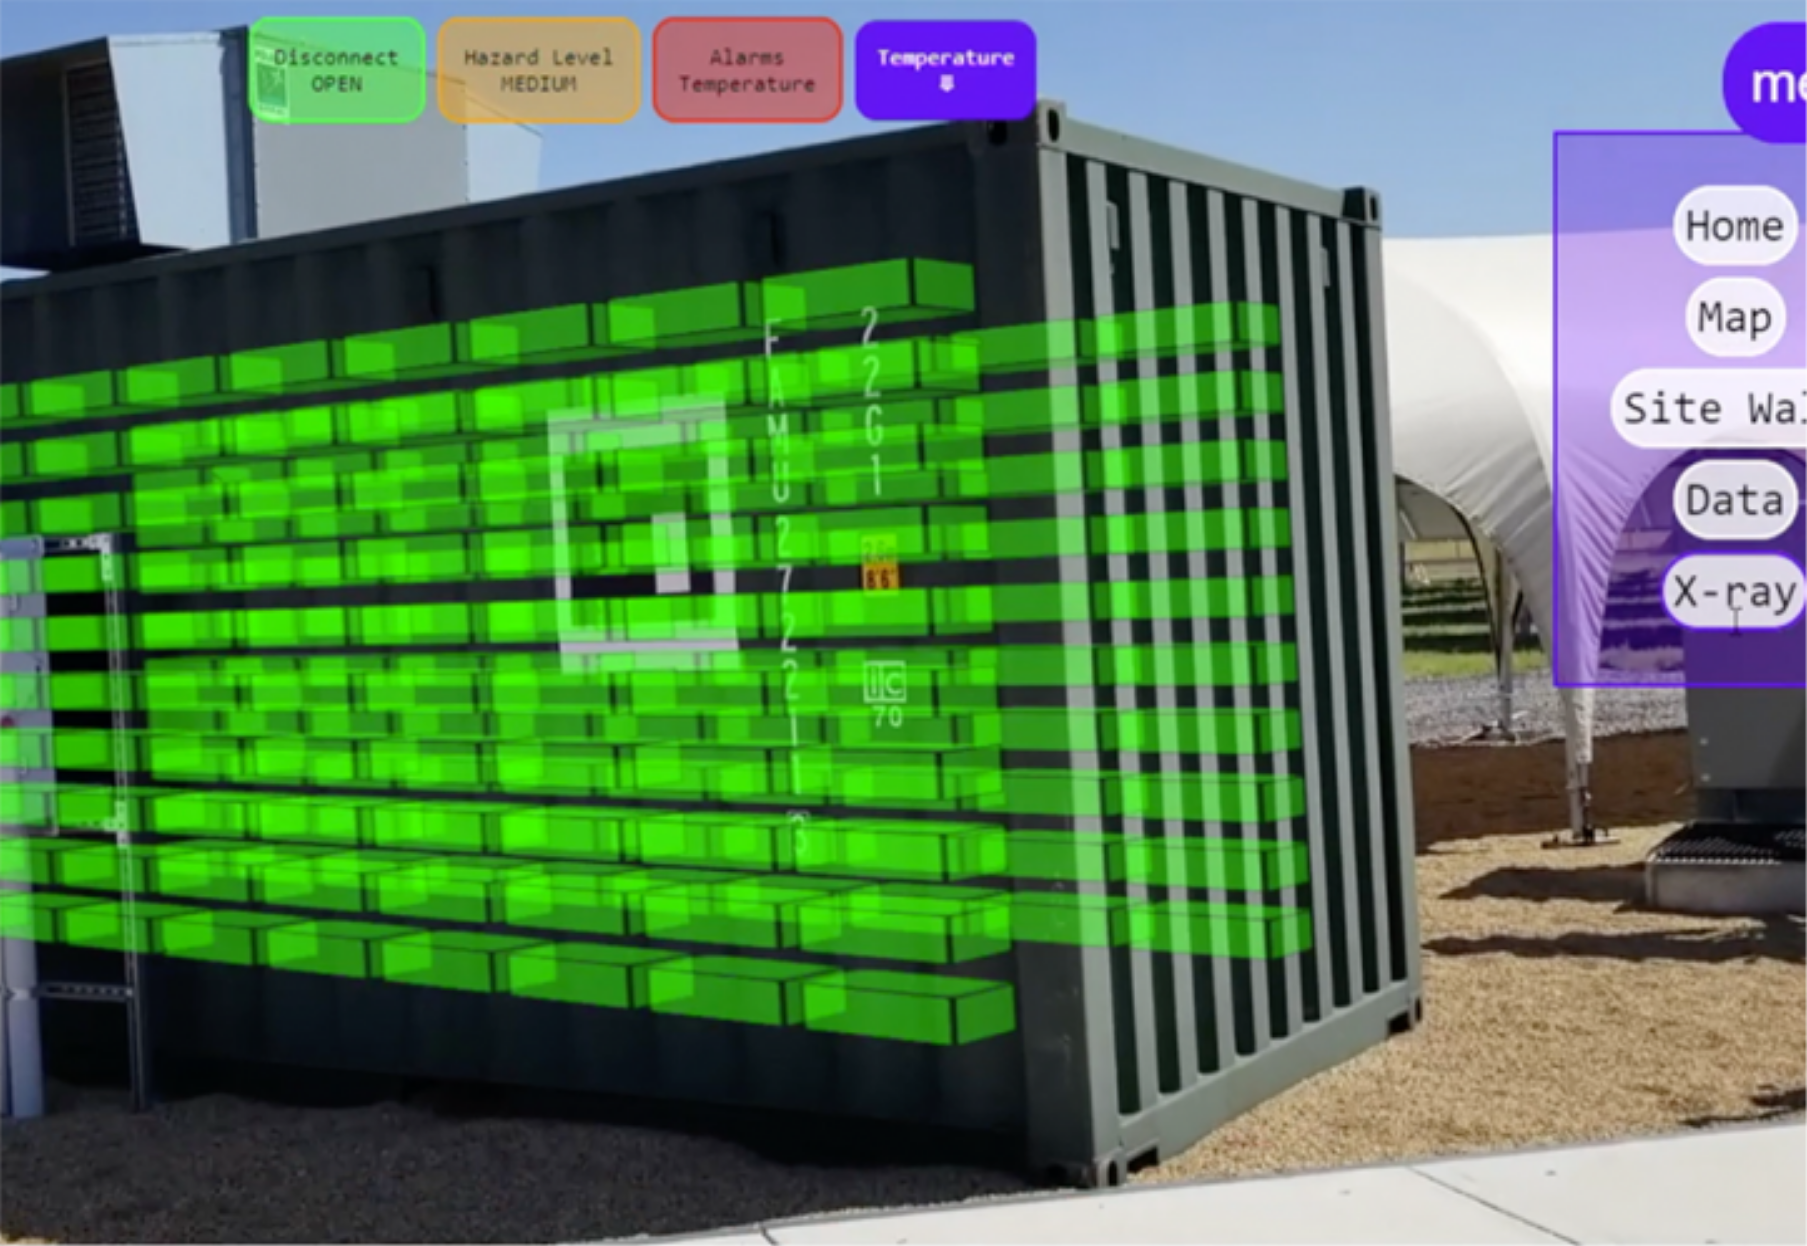 Energy storage facility with AR overlay